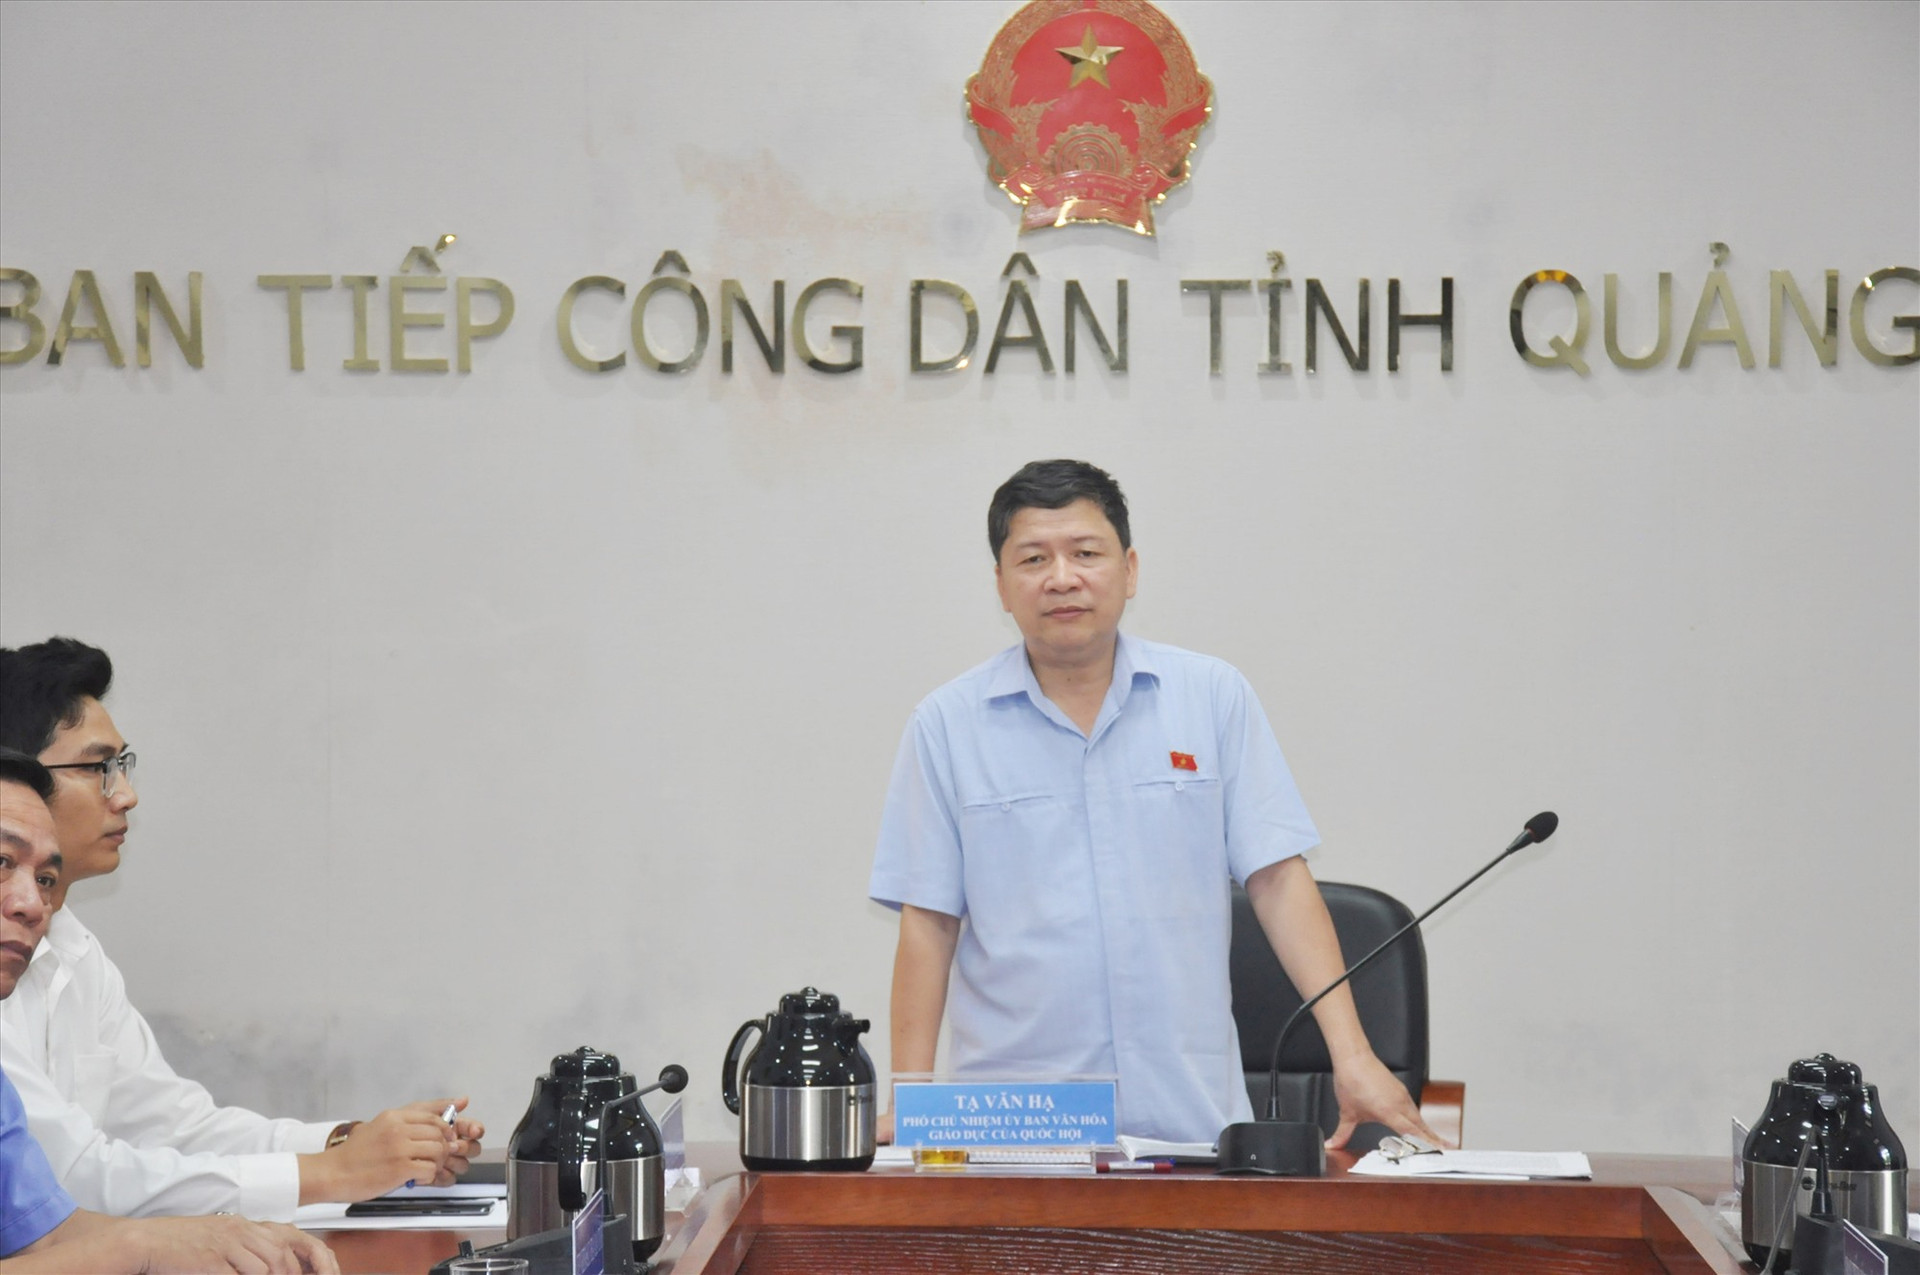 ĐBQH Tạ Văn Hạ chủ trì buổi tiếp dân tháng 5/2023 của Đoàn ĐBQH tỉnh sáng nay 4/5. Ảnh: N.Đ